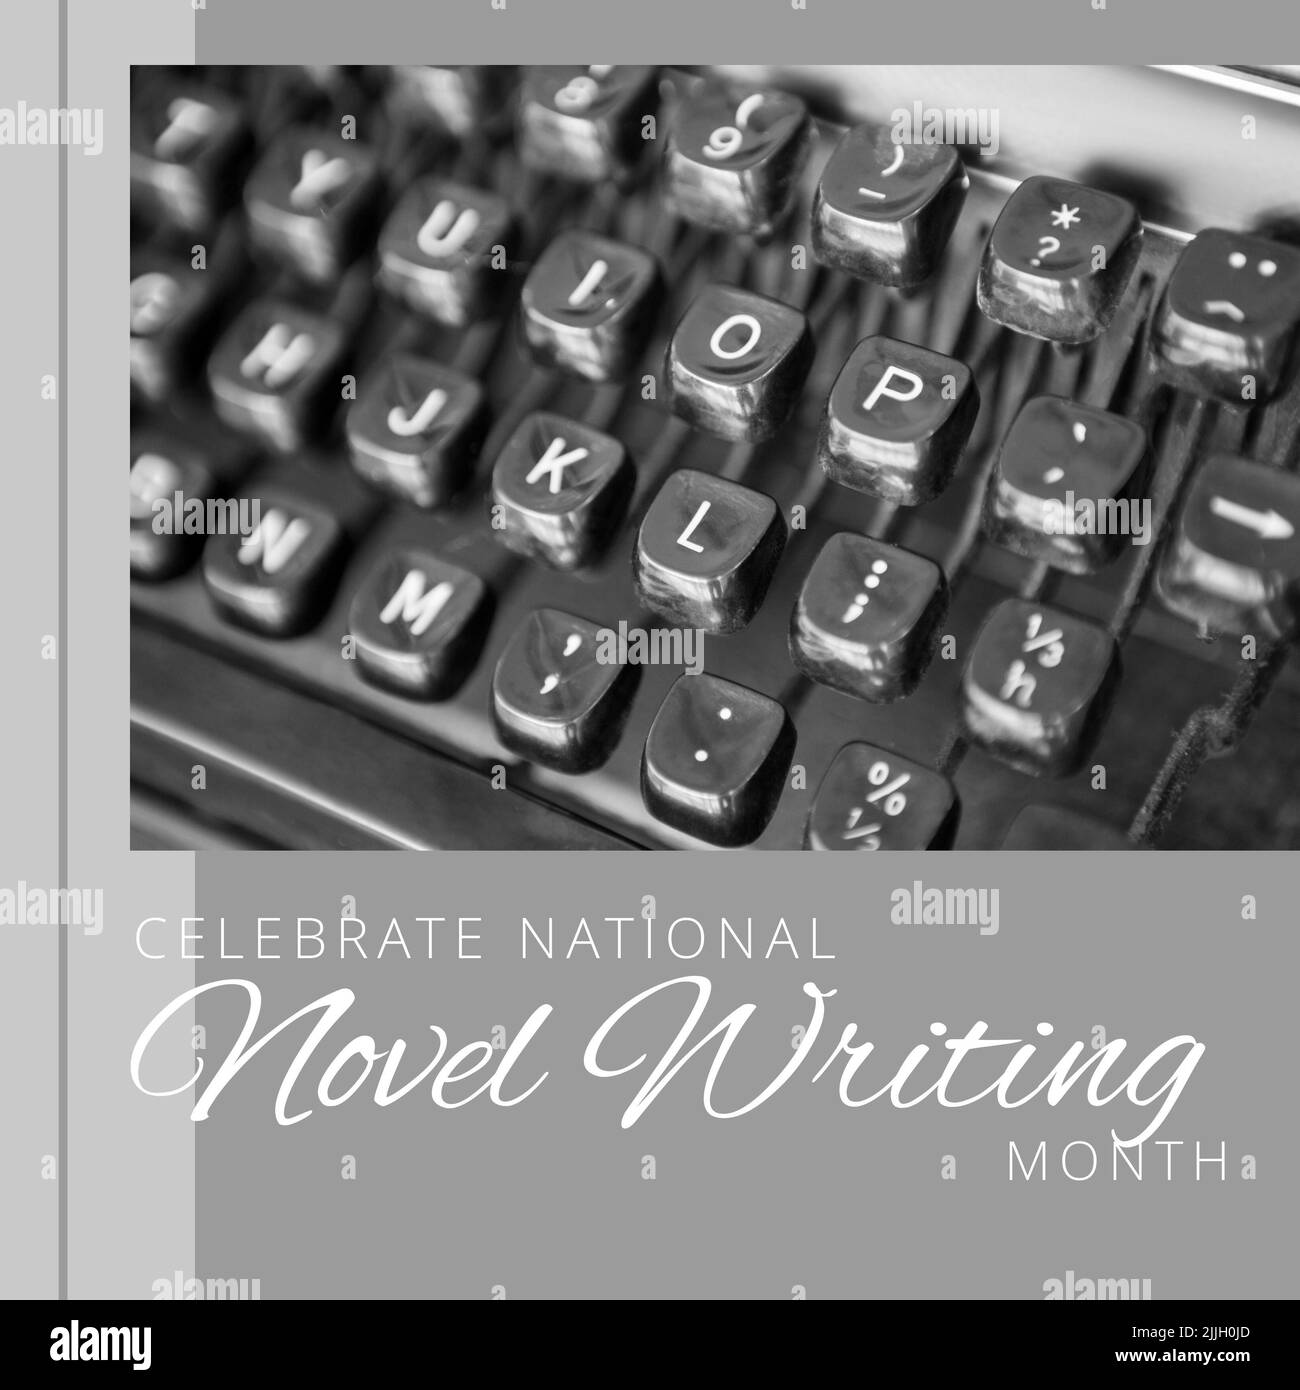 Zusammensetzung des Monatstextes für nationale Romane über Schreibmaschine Stockfoto